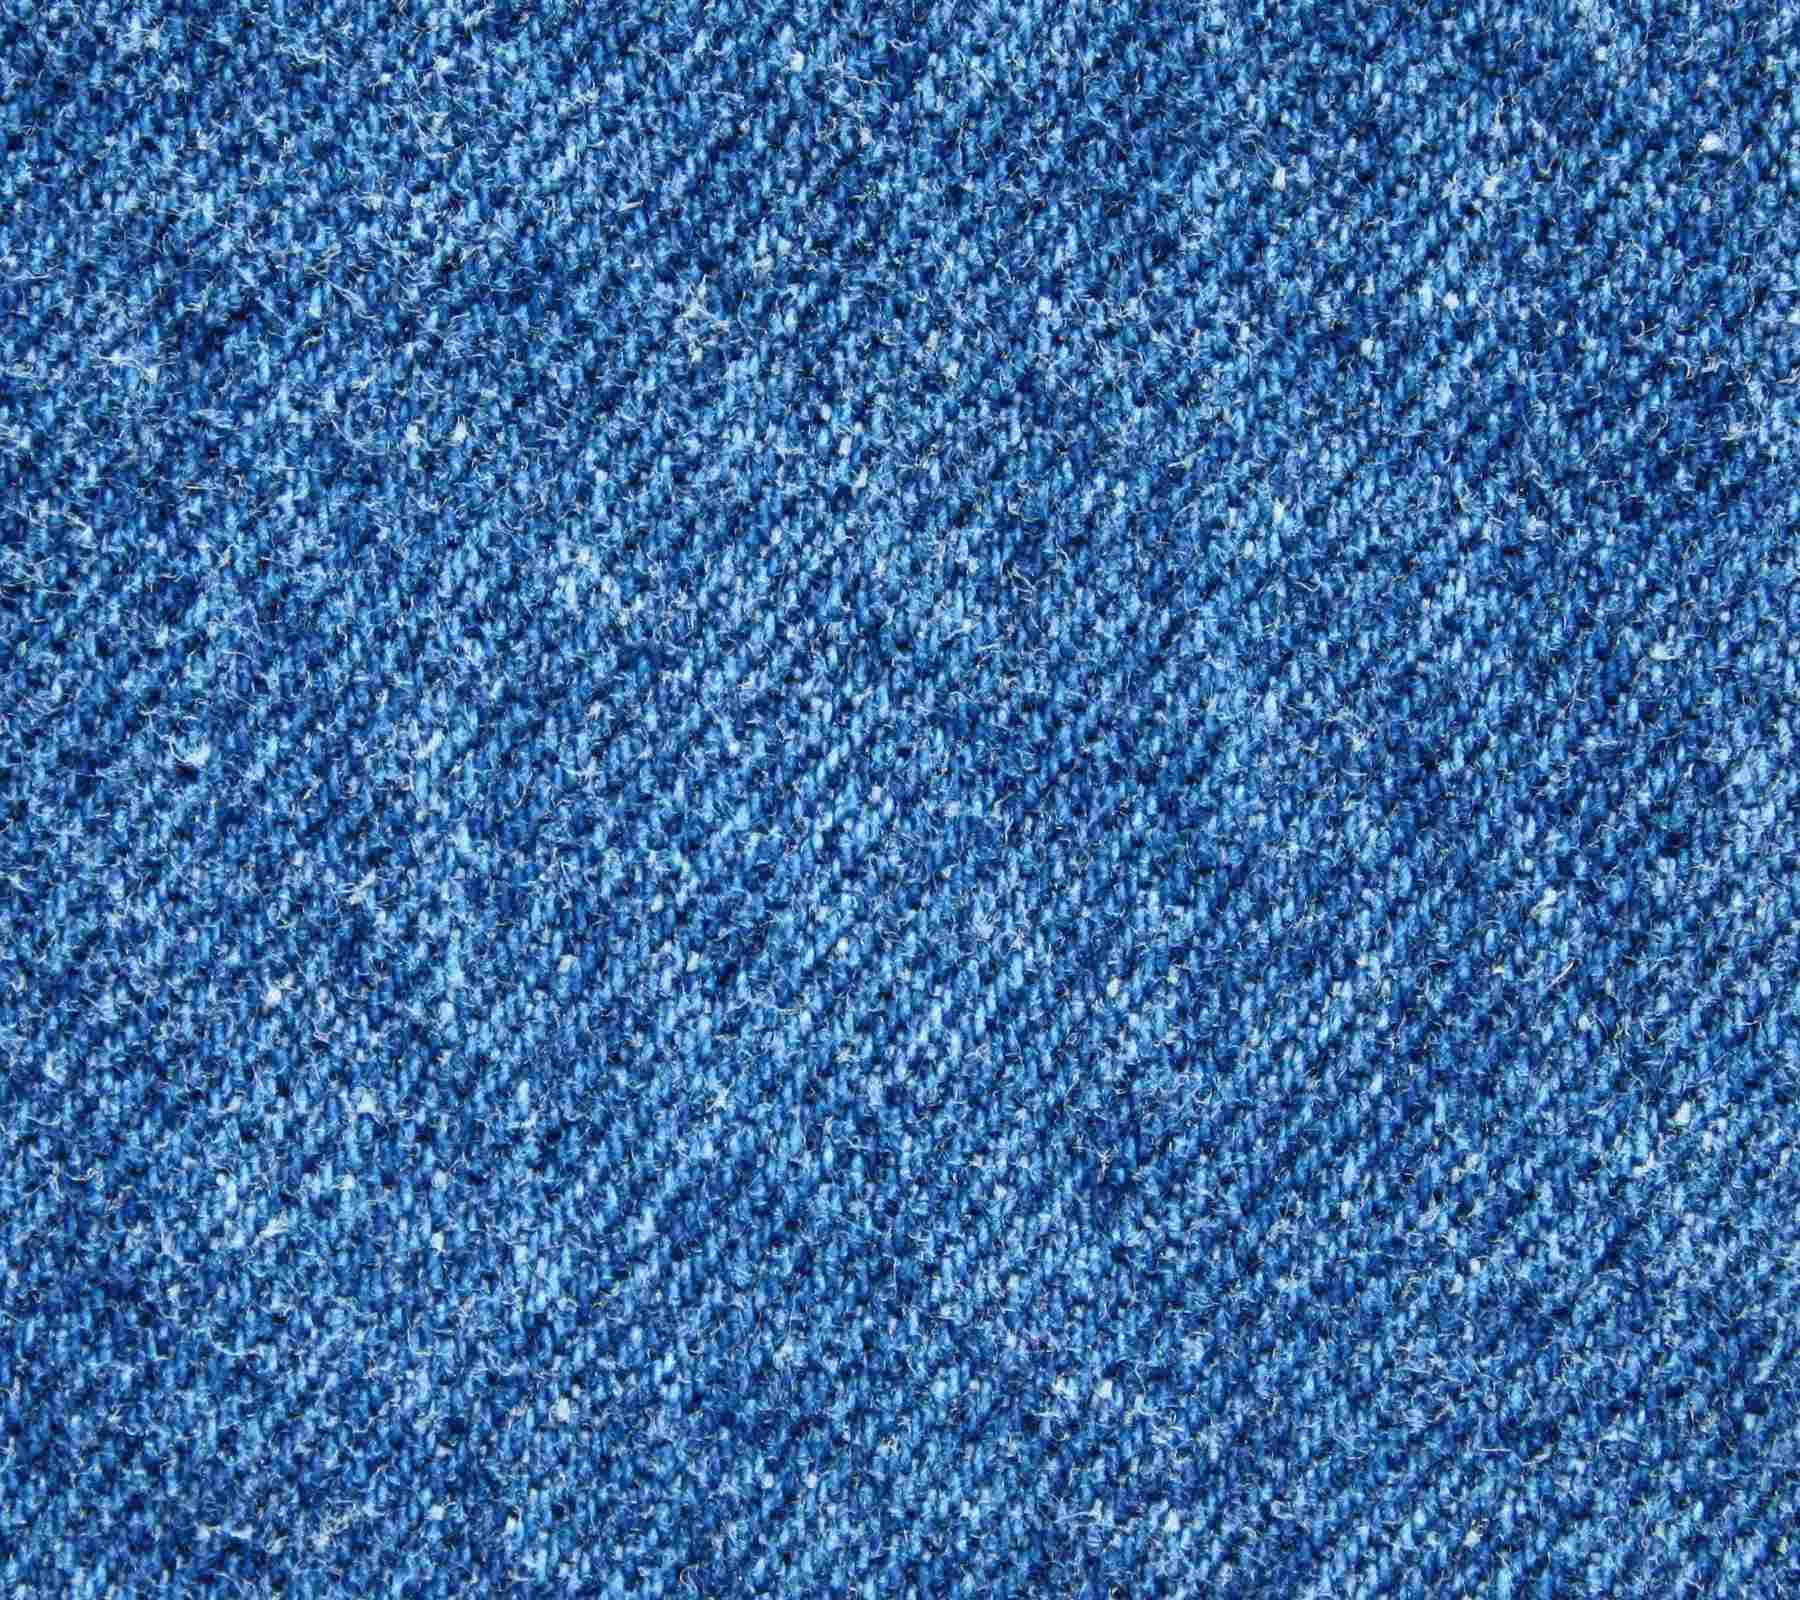 Texture Background Indigo Blue Denim Cotton Stock Photo 2300006635 |  Shutterstock